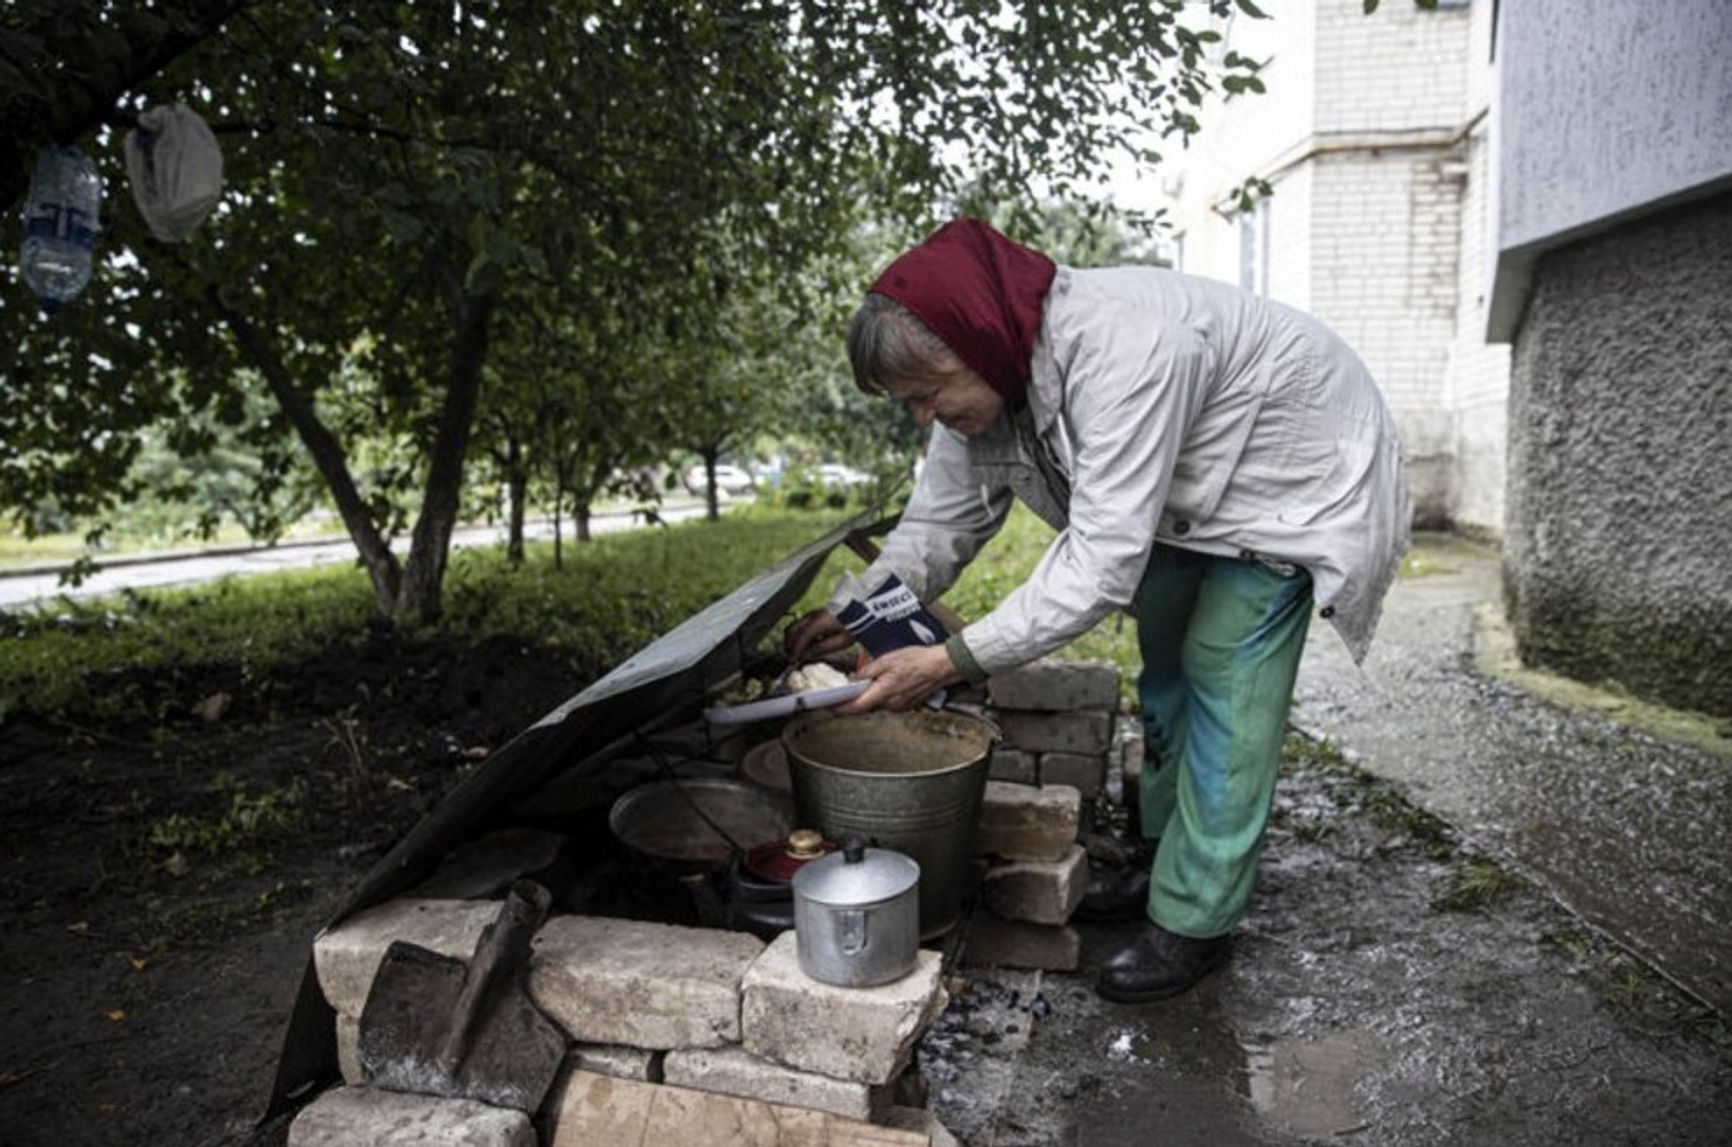 Жительница Купянска готовит еду у подъезда многоэтажки